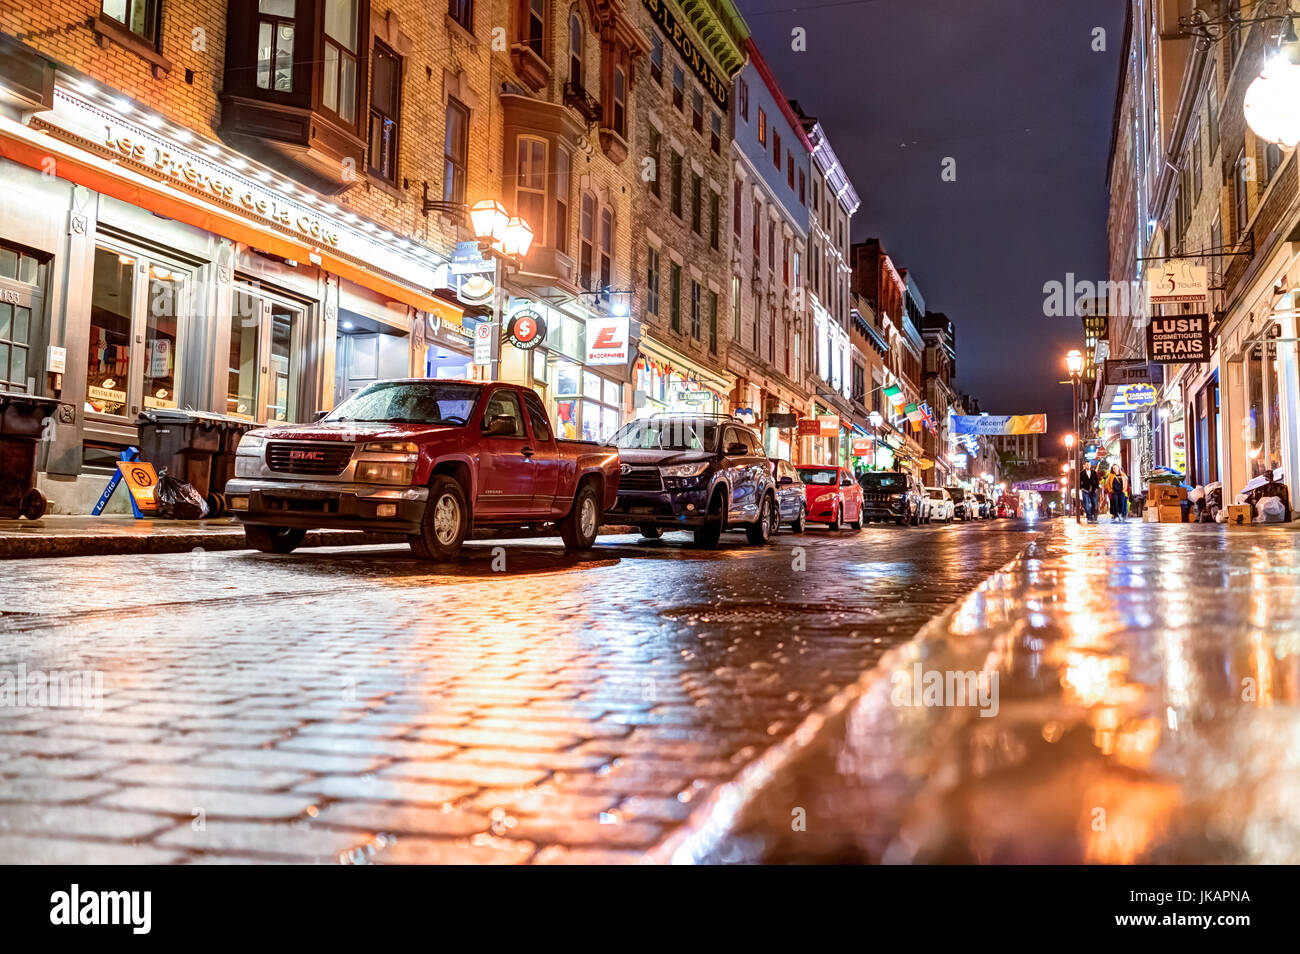 La ville de Québec, Canada - 30 mai 2017 : rue pavée de la vieille ville avec ses boutiques et magasins de nuit sous la pluie Banque D'Images